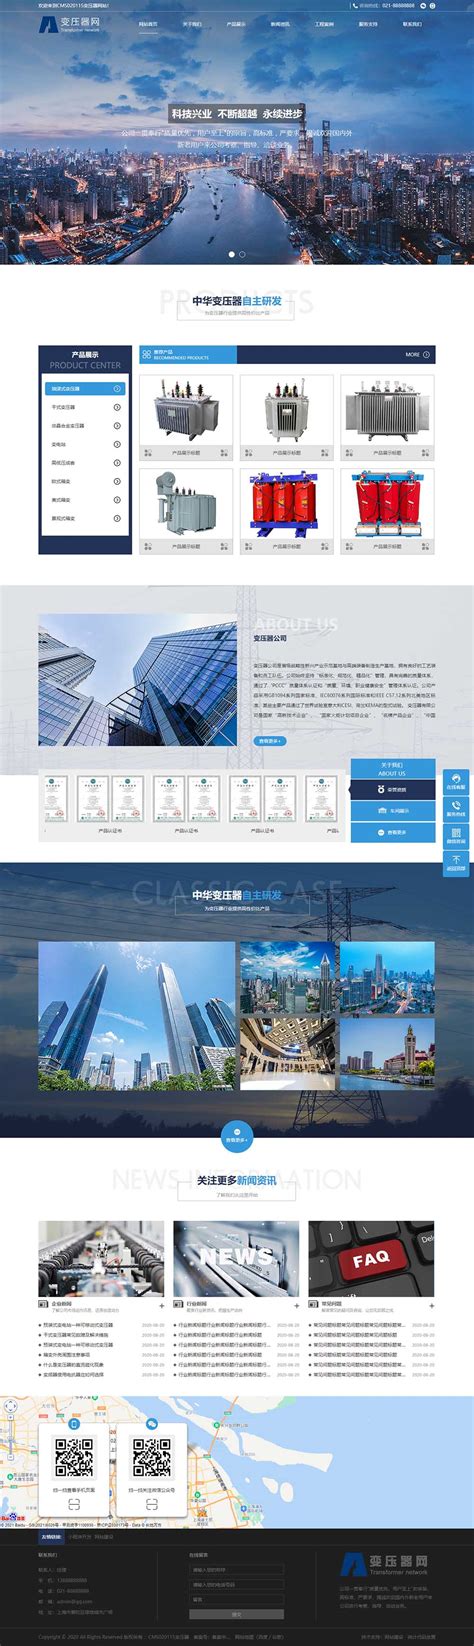 免费做网站 _ 徐州网站建设_ 网络公司手机网站制作 - EUCMS企业智能建站系统